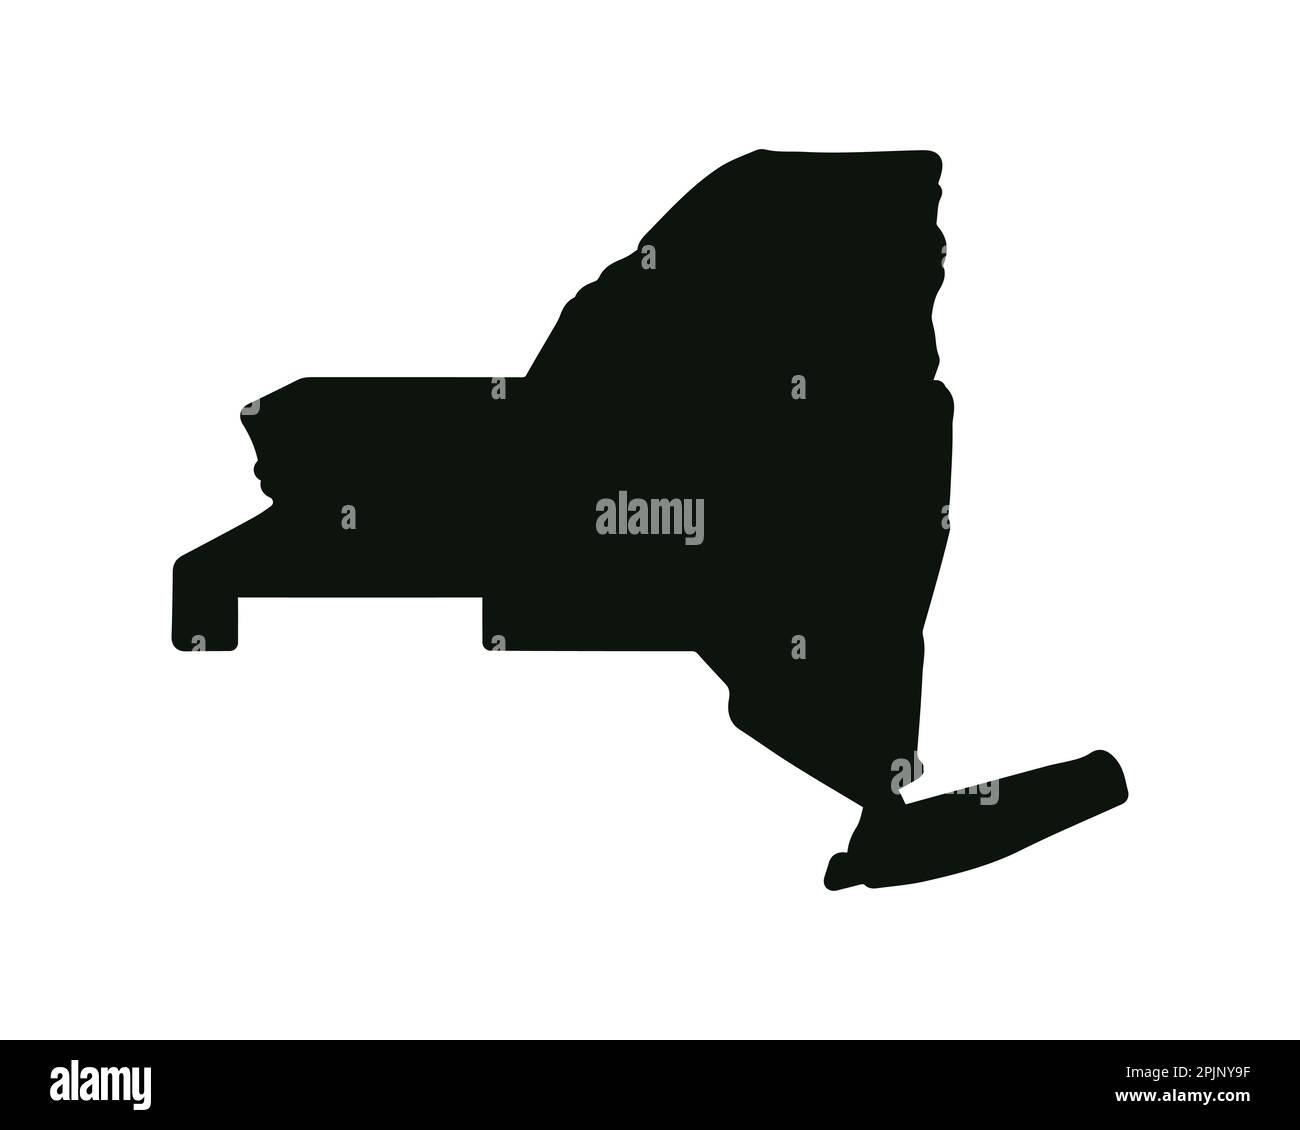 Mappa dello stato di New York. Mappa dello stato DEGLI STATI UNITI. Simbolo della silhouette di New York. Illustrazione vettoriale Illustrazione Vettoriale